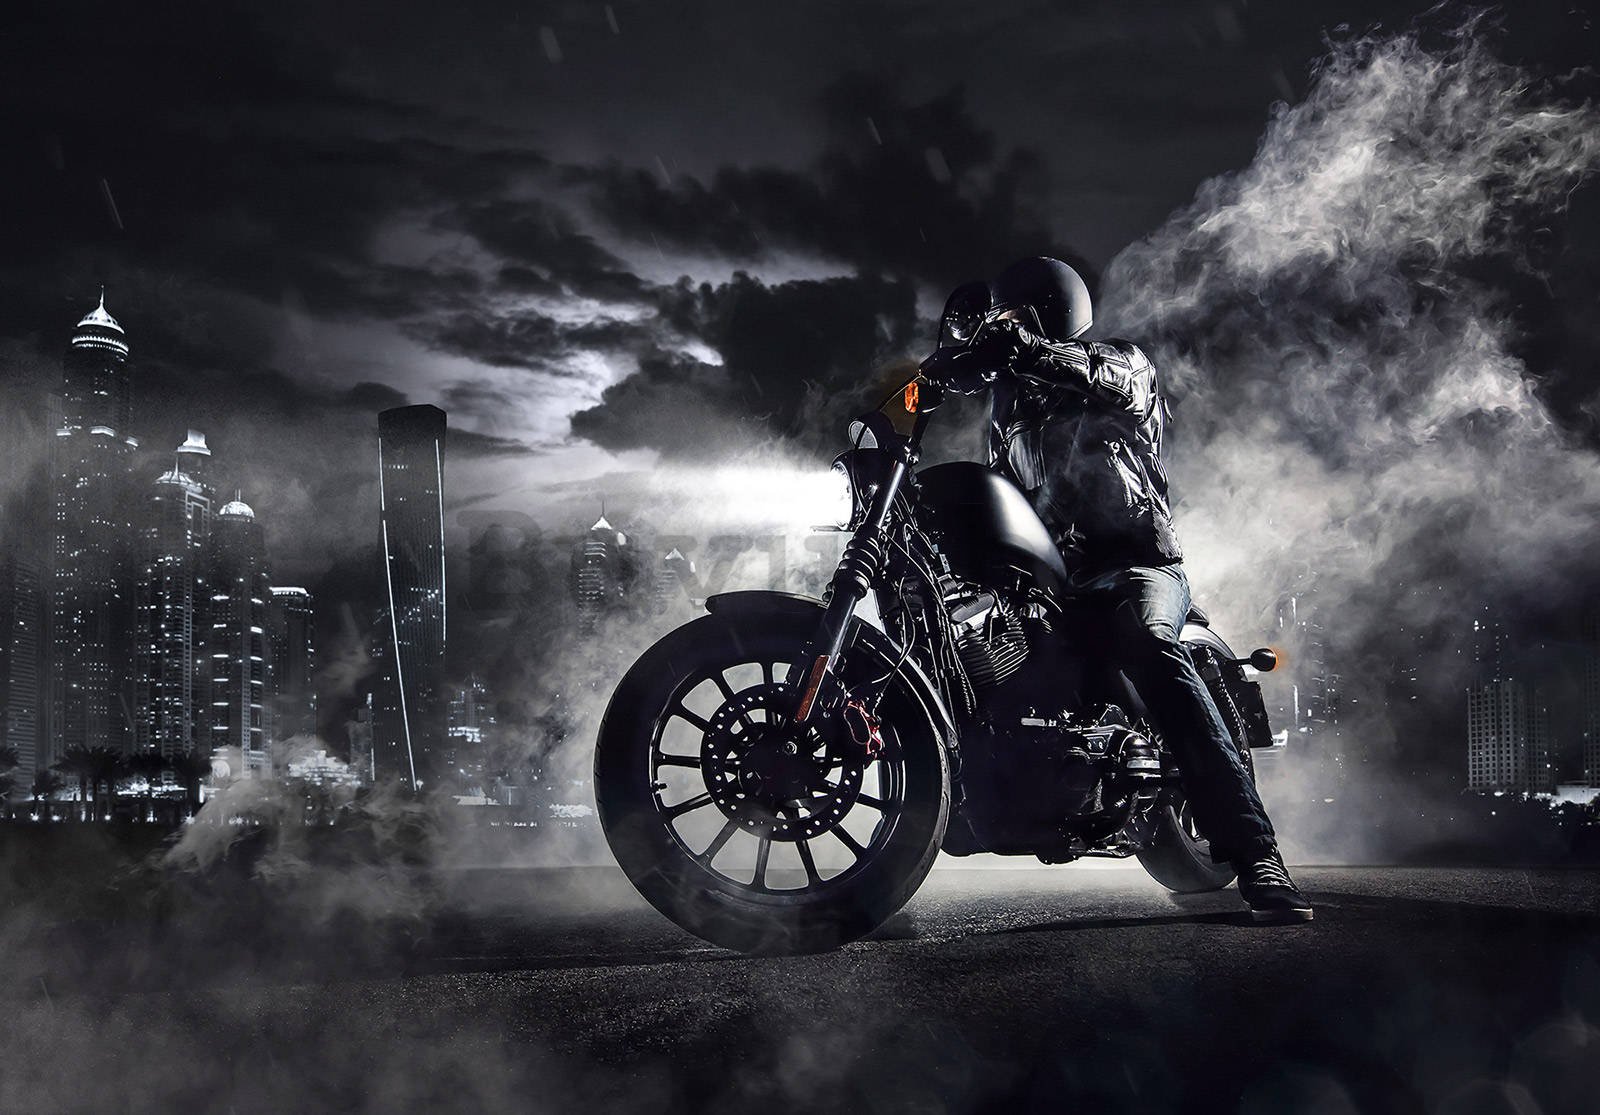 Vlies foto tapeta: Motociklista u noćnom gradu - 152,5x104 cm